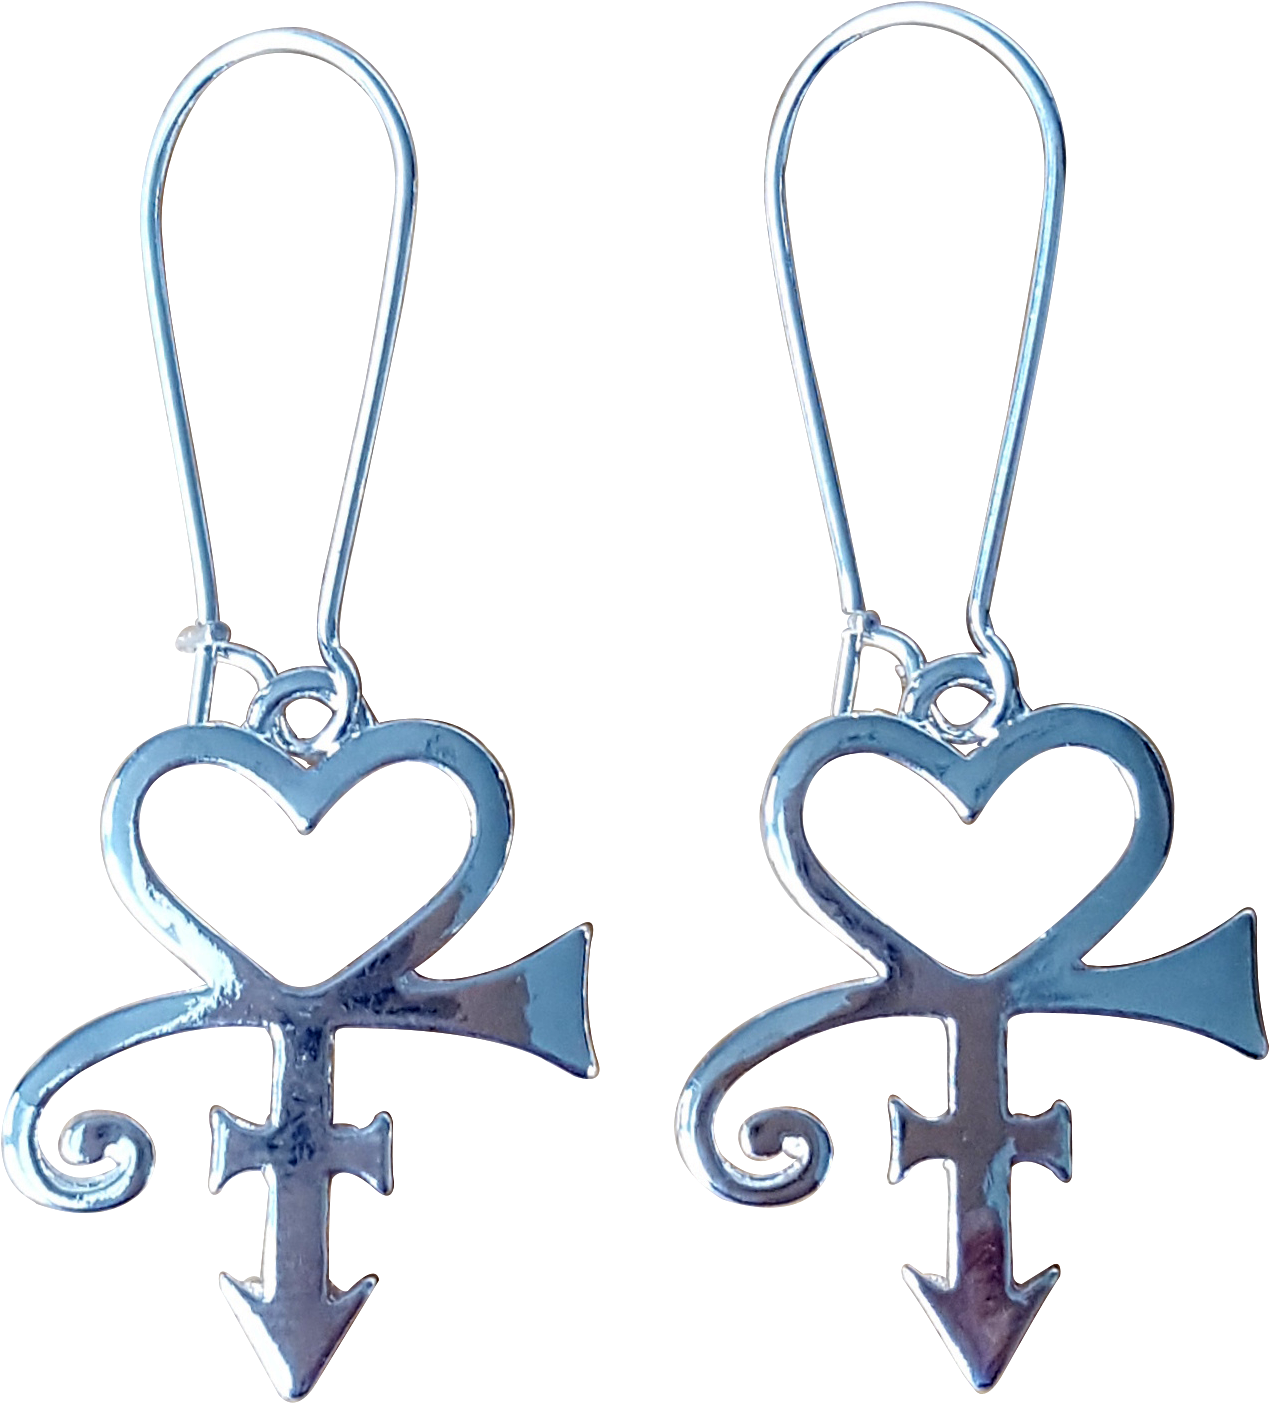 Download Download Prince Love Symbol Earrings, Very Cute - Earrings ...